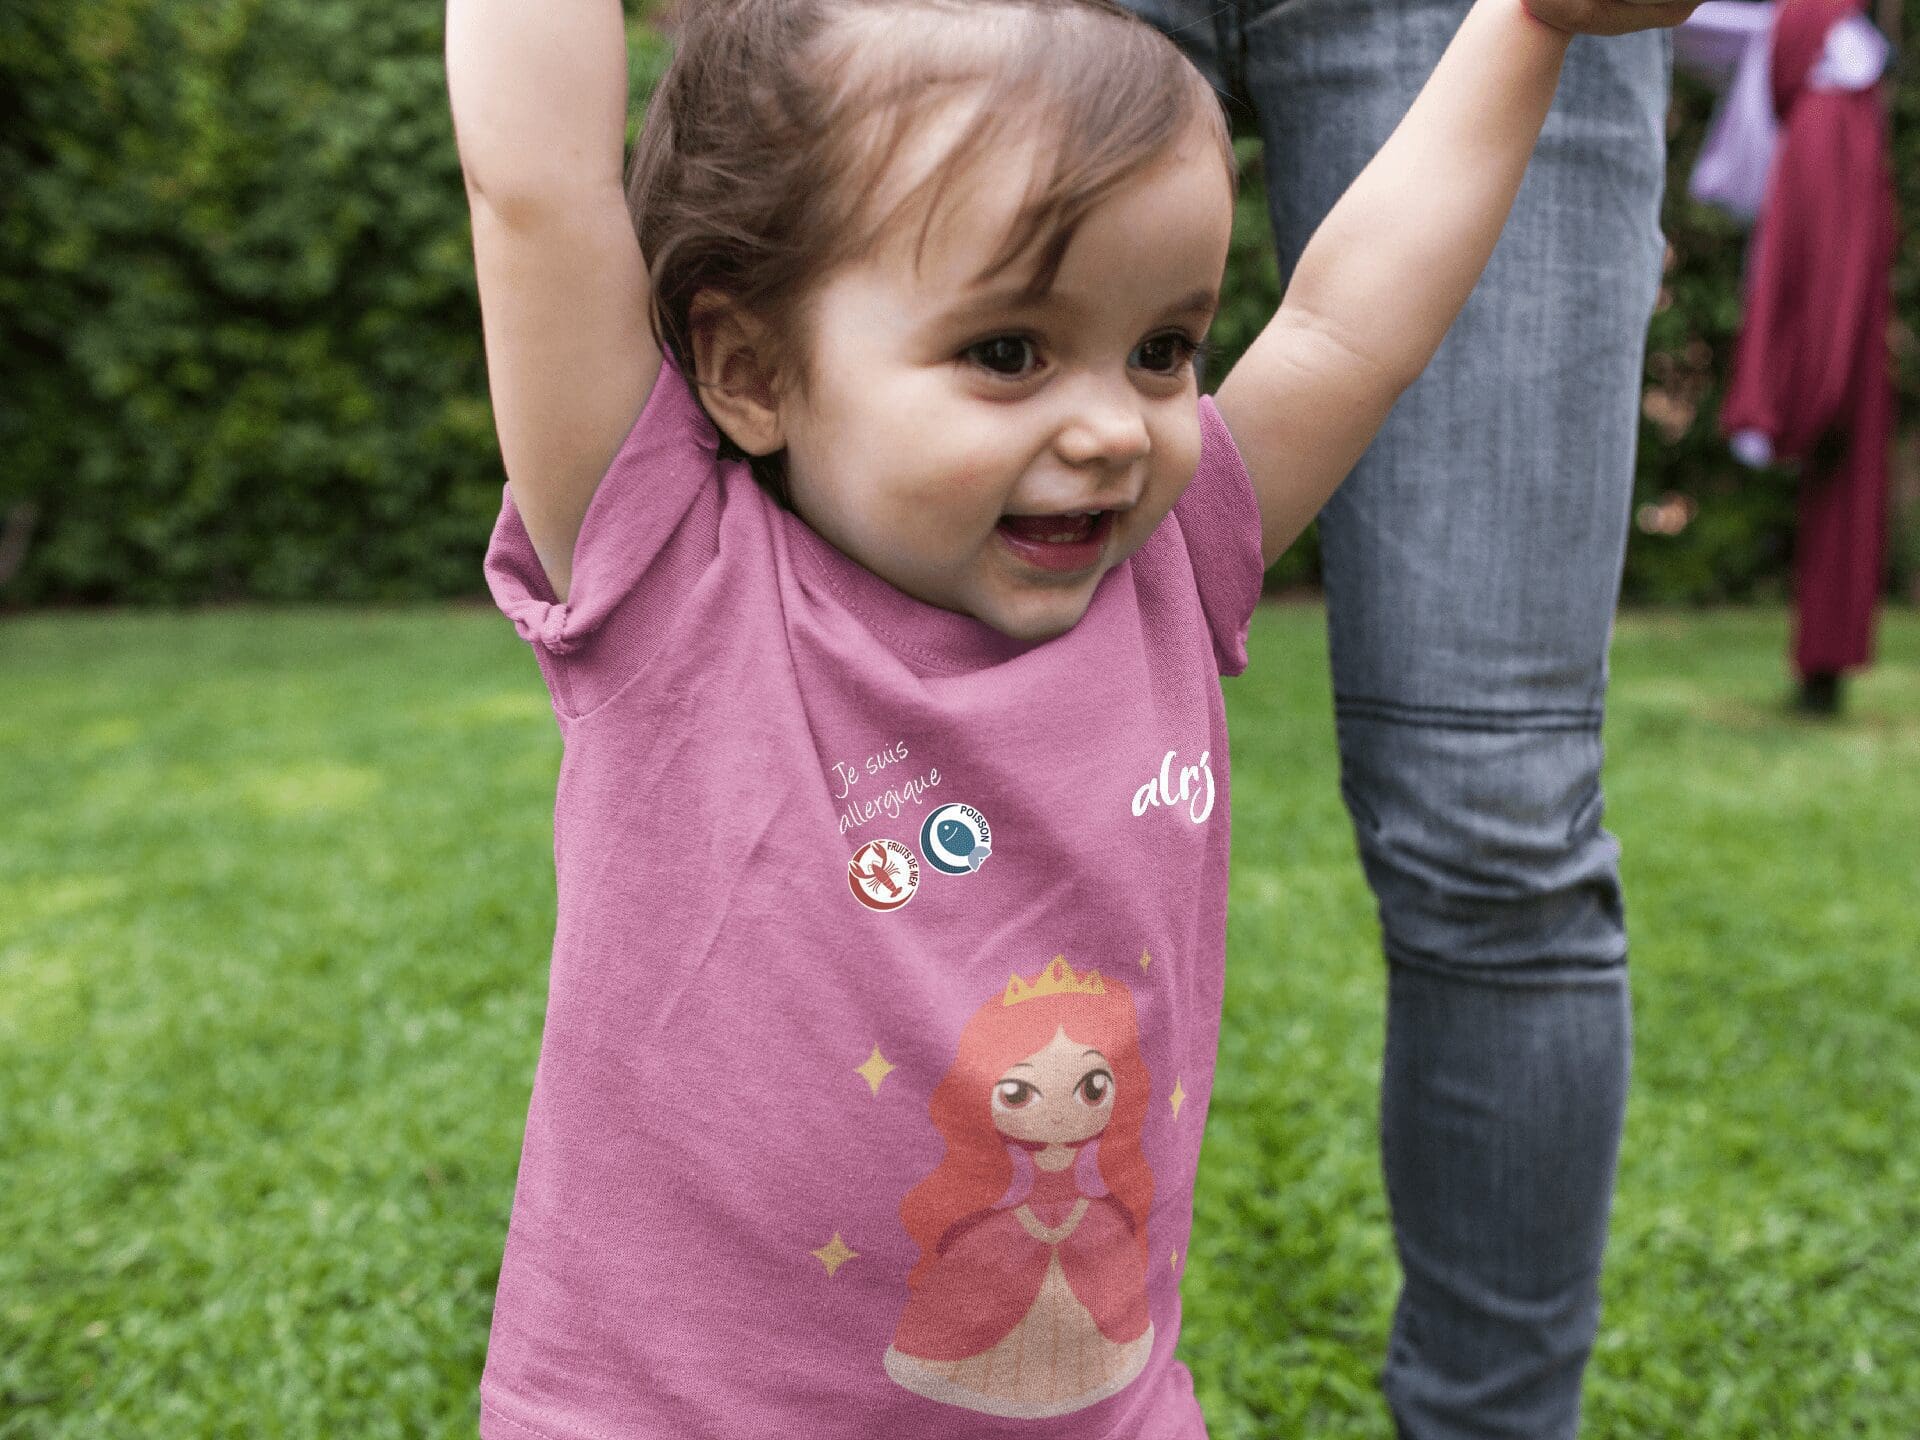 bébé avec allergies alimentaires portant un t-shirt alrj princesse